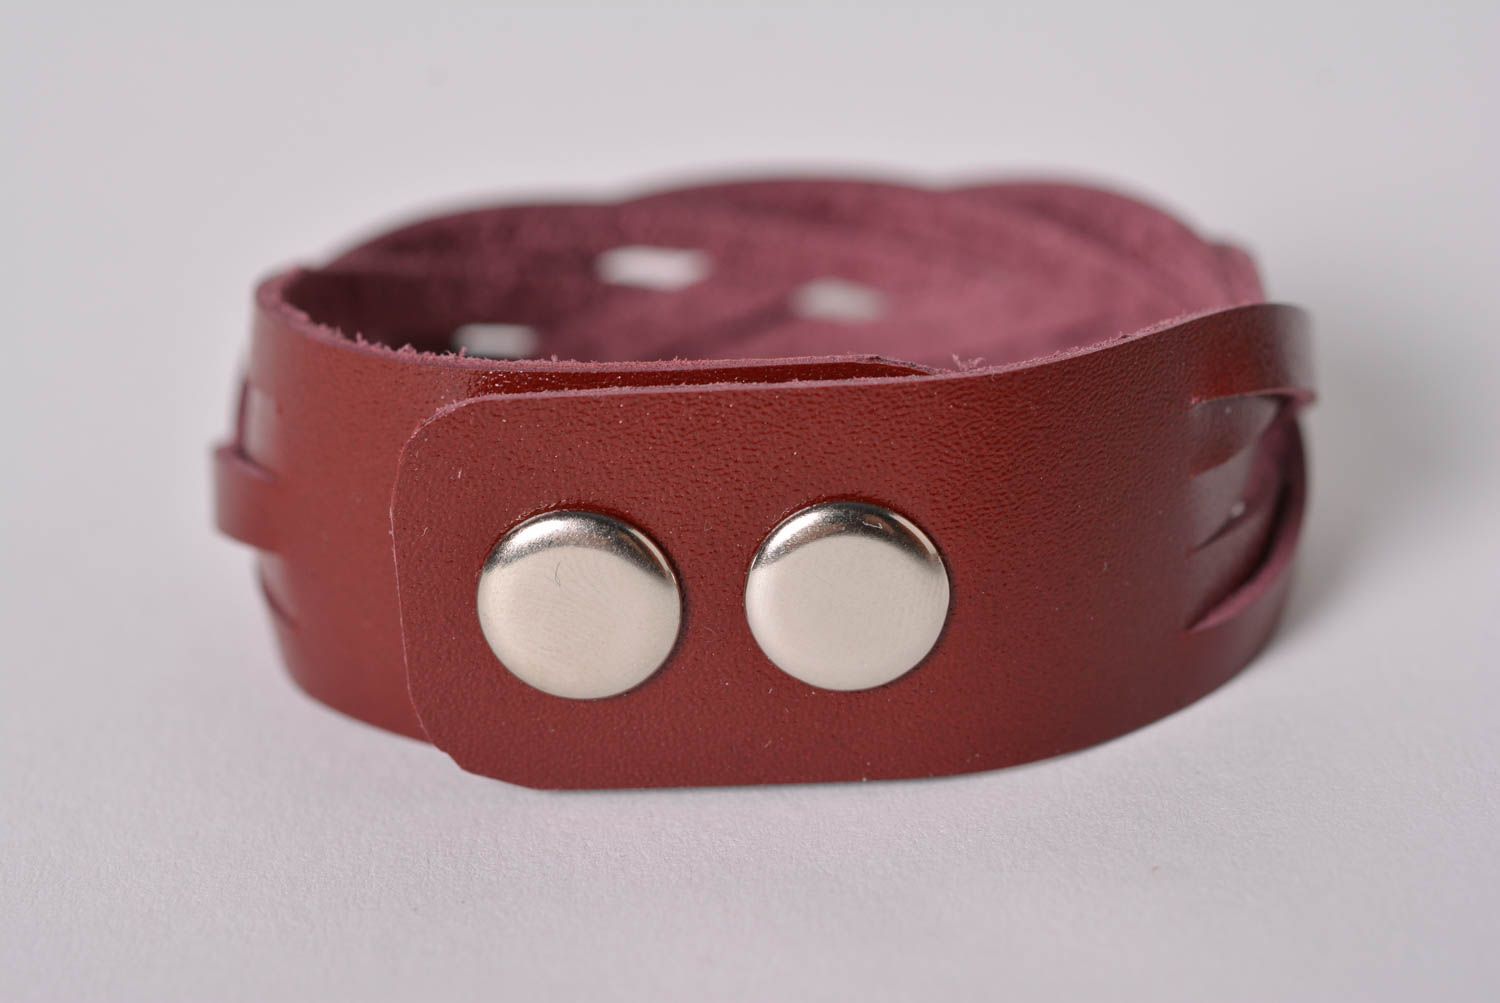 Stylish handmade leather bracelet wrist bracelet leather goods handmade gifts photo 3